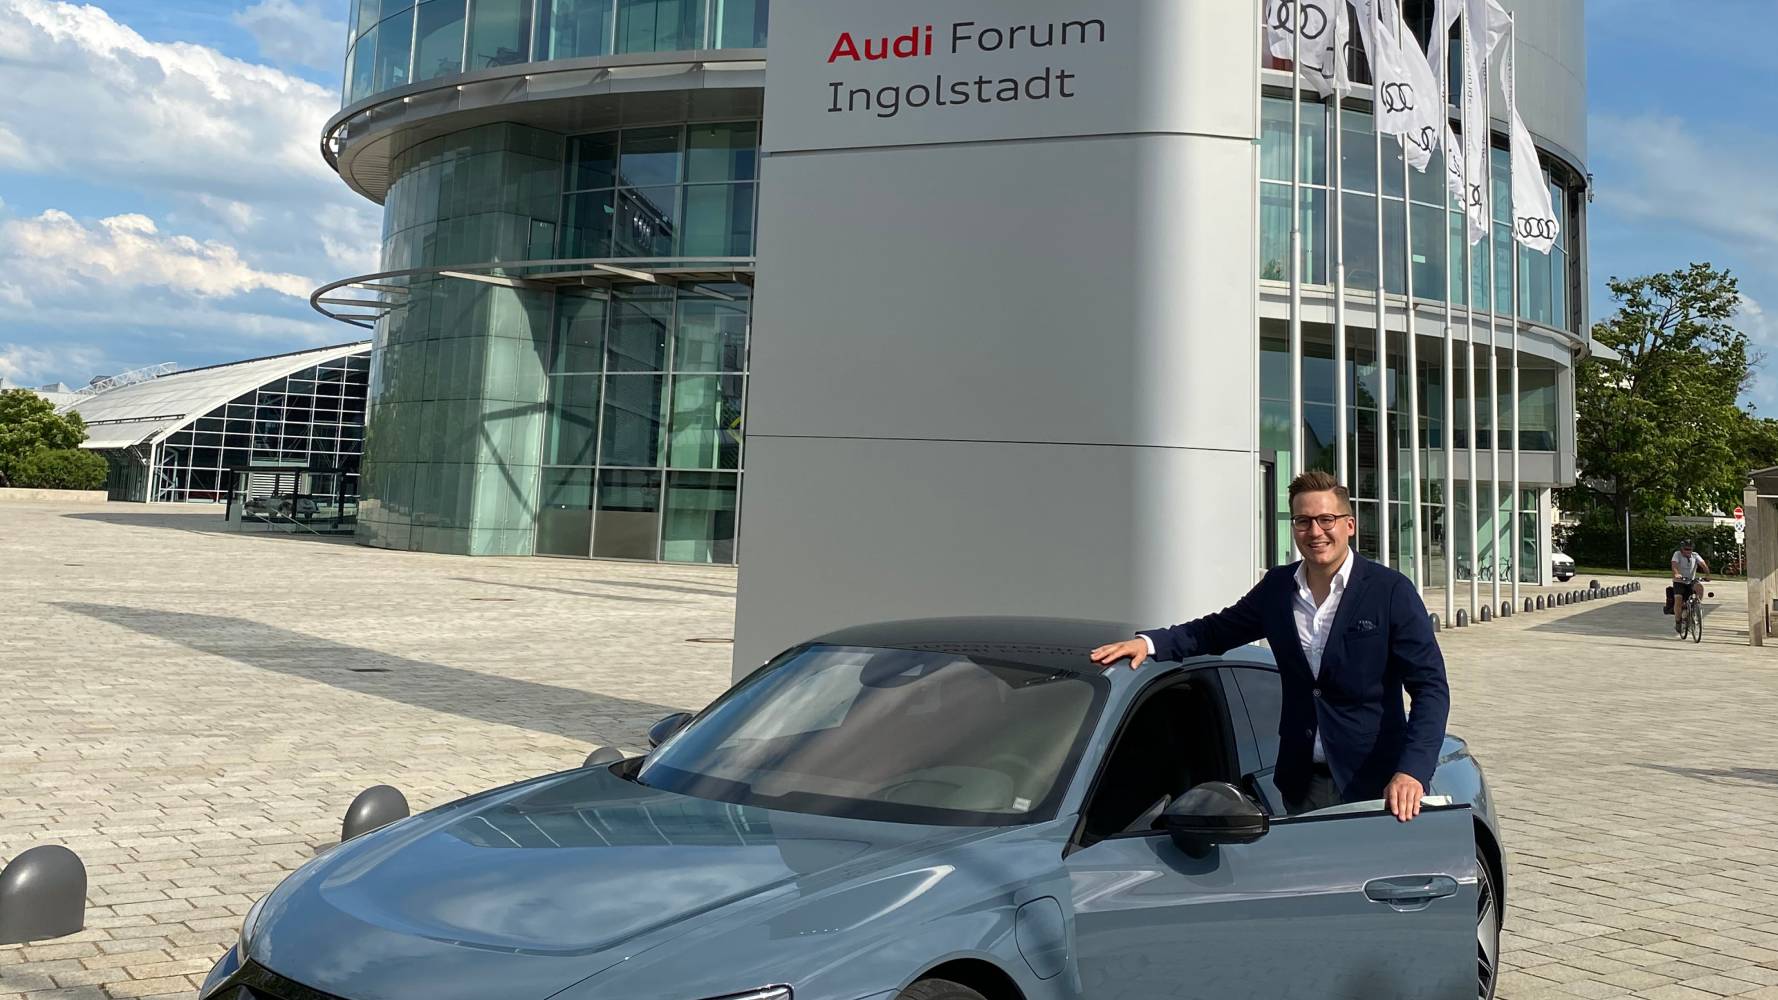 Im Interview erzählt Alumnus Luca Strobel von seiner spannenden Praktikumszeit bei Audi in Ingolstadt.